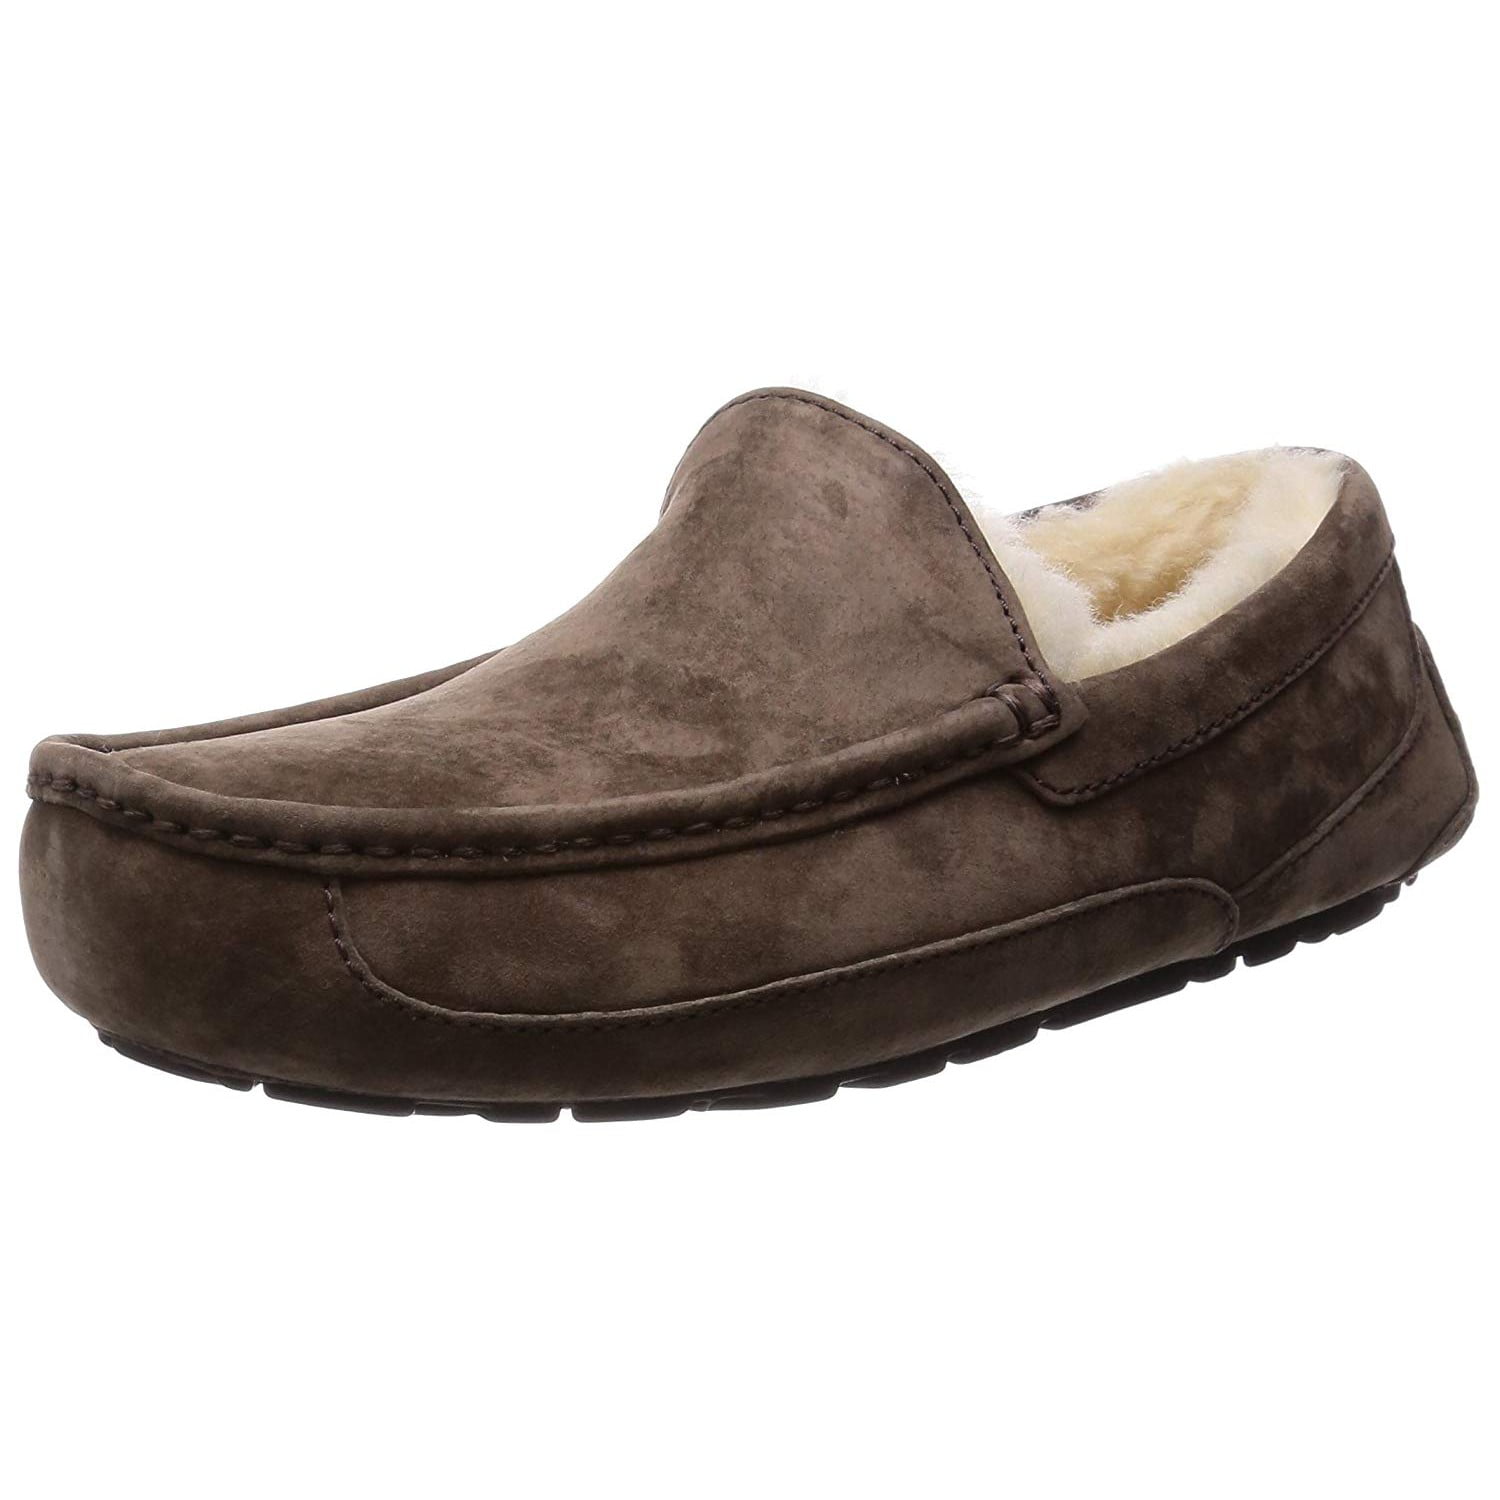 UGG - men's ascot slipper, charcoal, 10 m us - Walmart.com